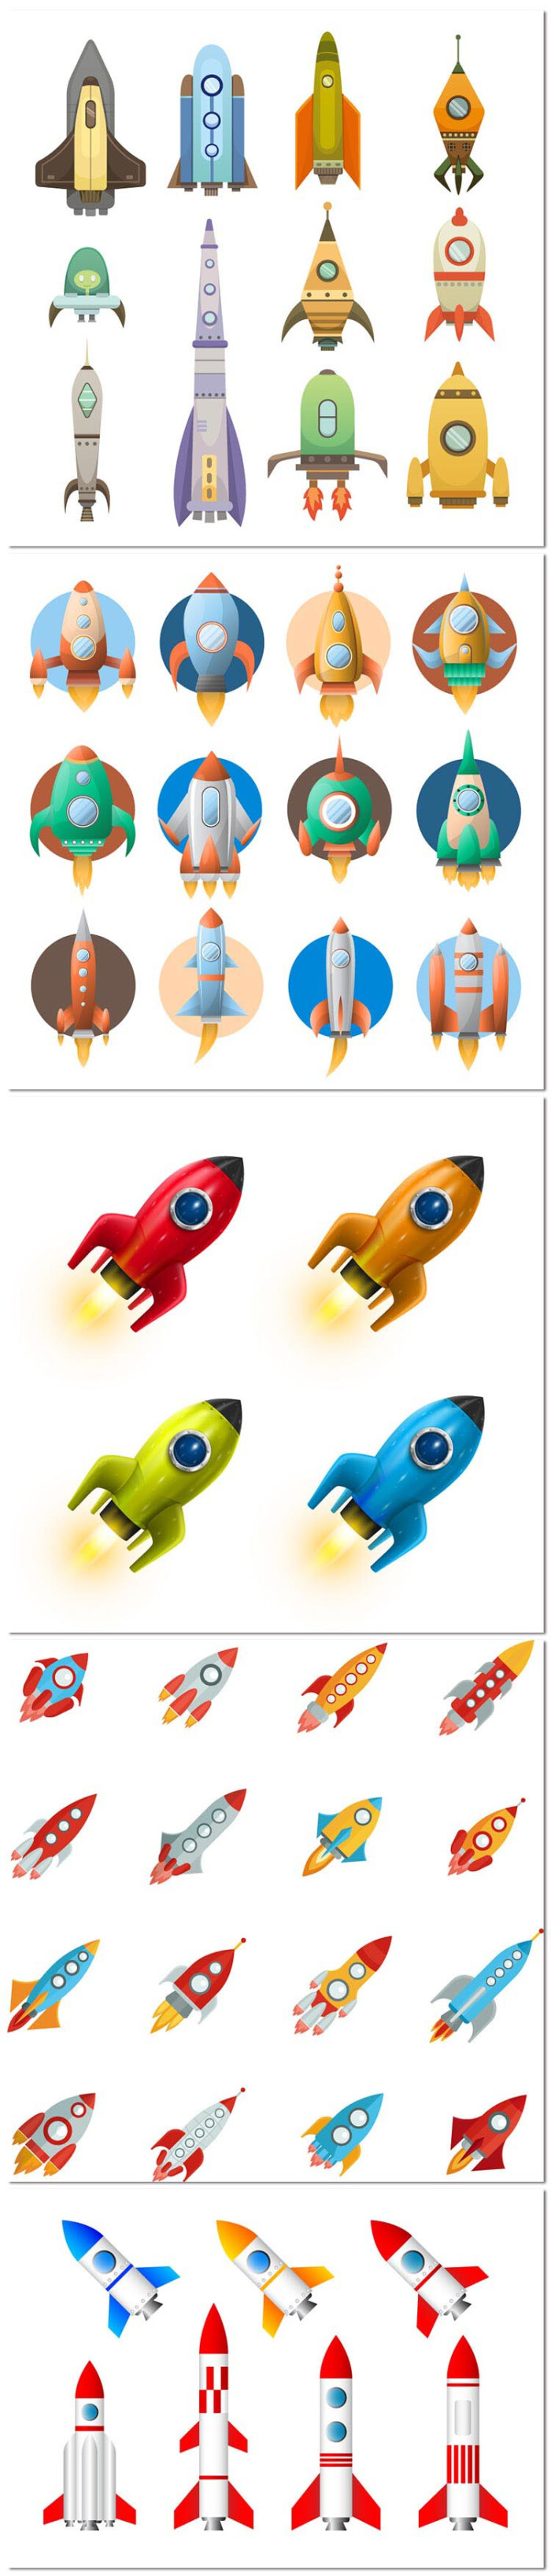 5张手绘儿童卡通火箭太空飞船蒸汽宇宙航空少儿插画矢量素材模板设计